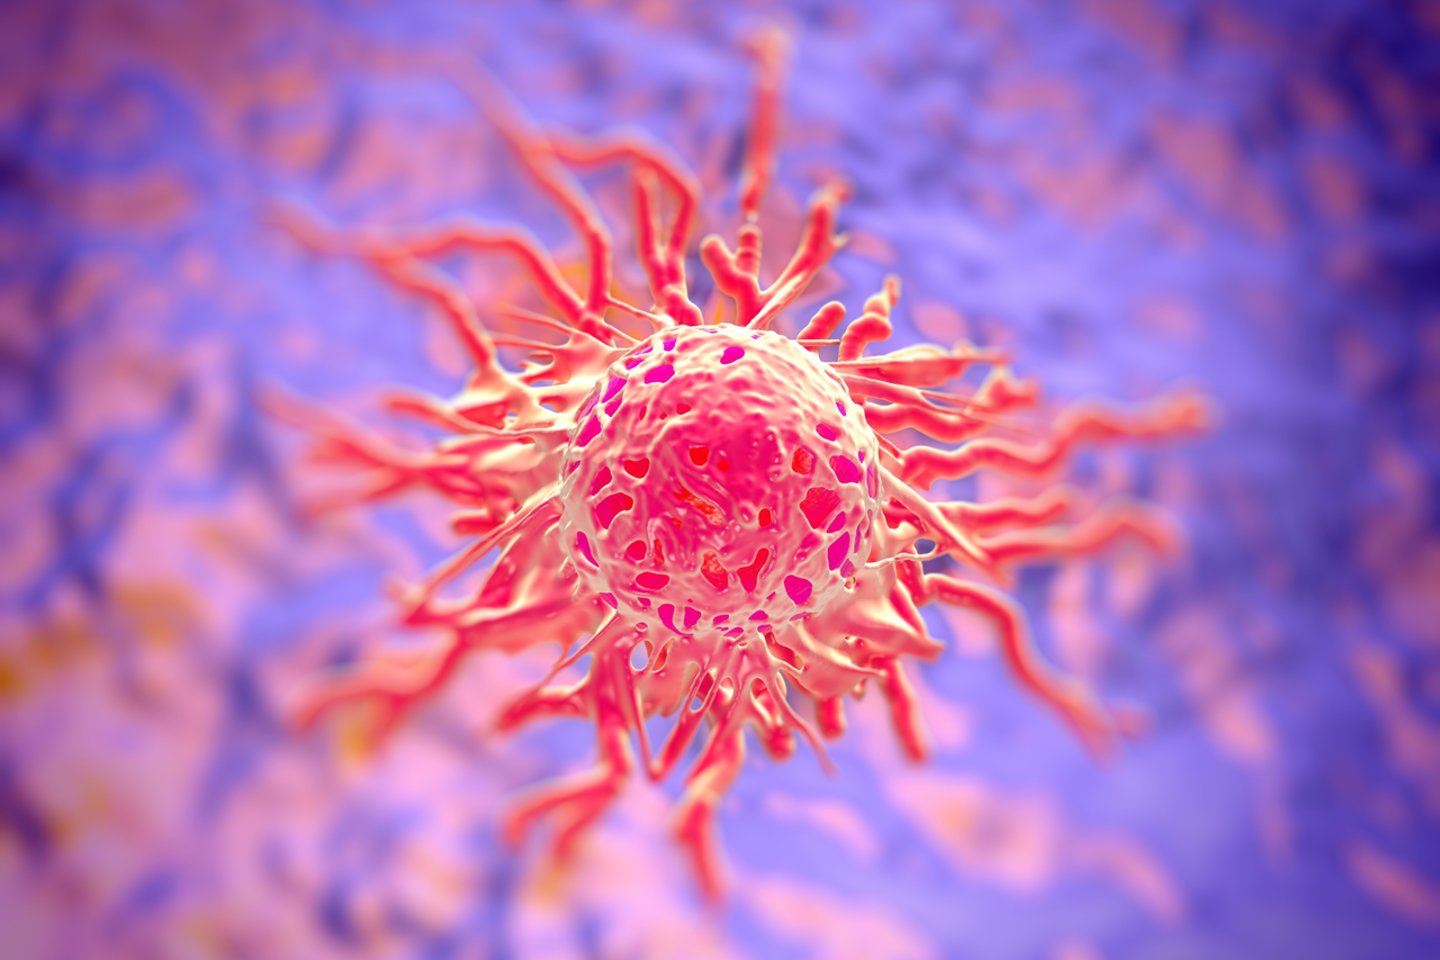 Vėžio ląstelė<br>123rf iliustr.